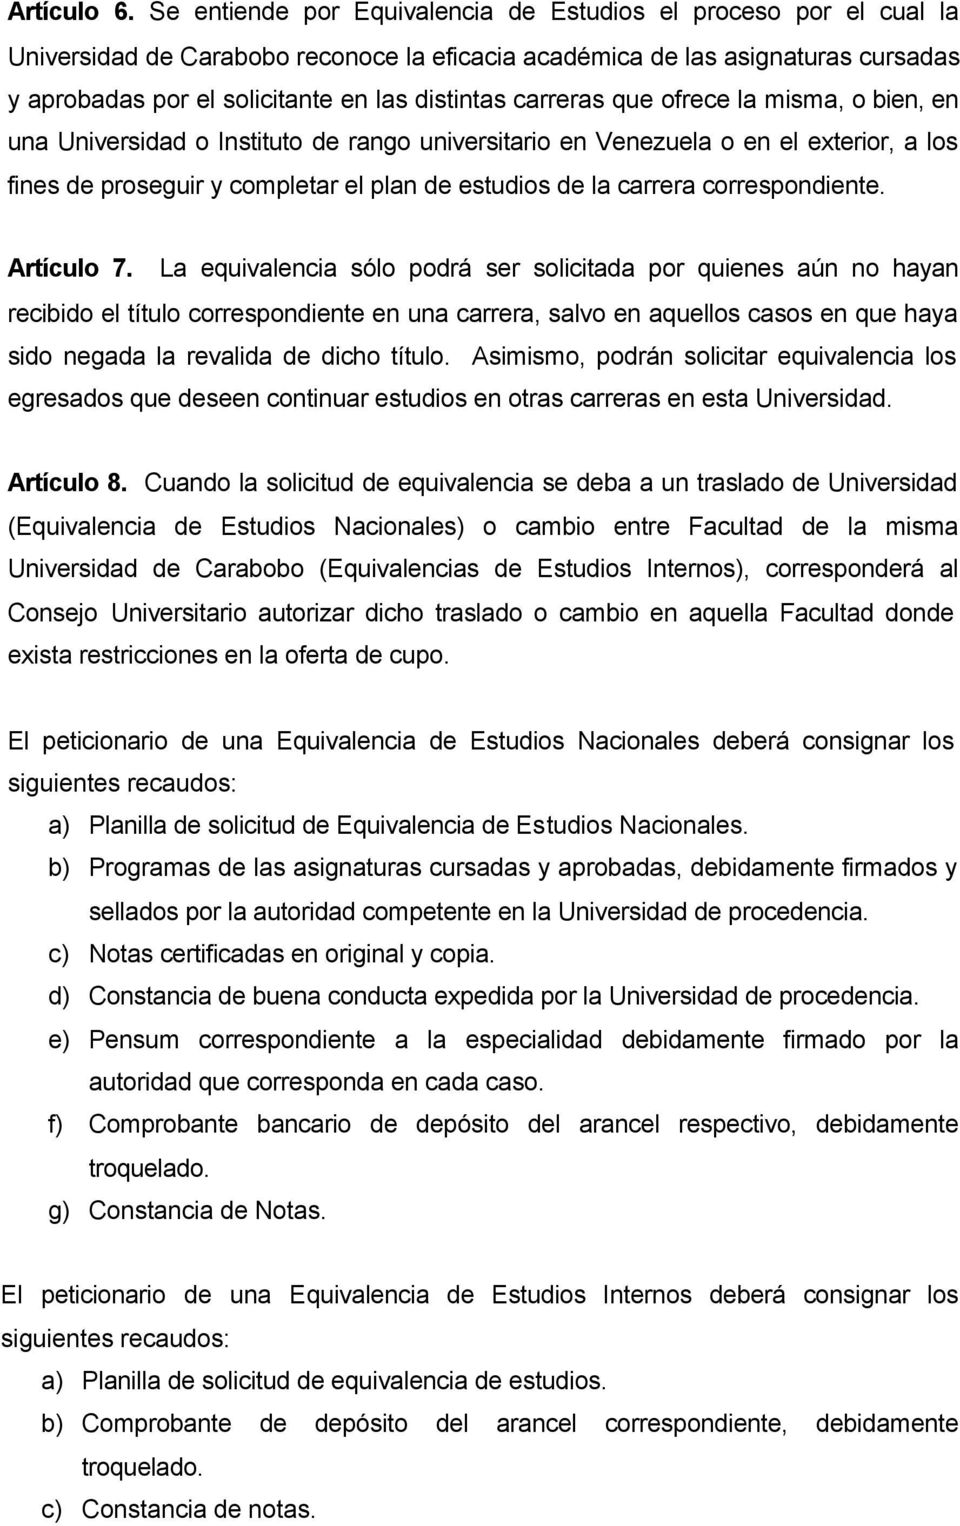 carreras que ofrece la misma, o bien, en una Universidad o Instituto de rango universitario en Venezuela o en el exterior, a los fines de proseguir y completar el plan de estudios de la carrera